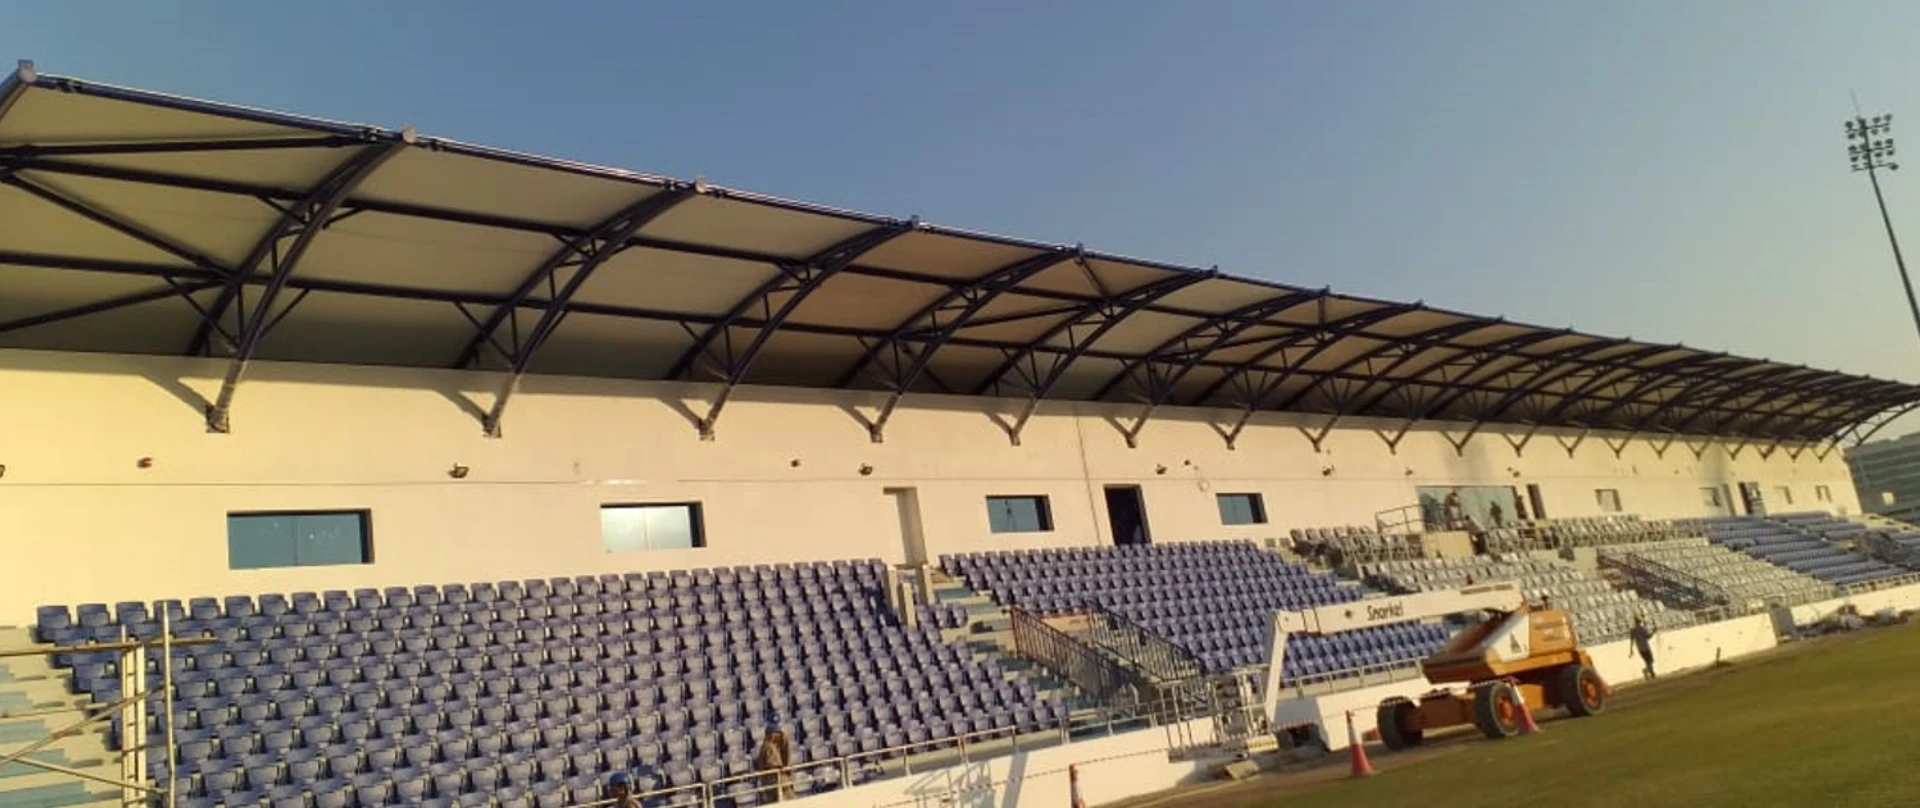 PTFE Shade Installation for al nasr stadium